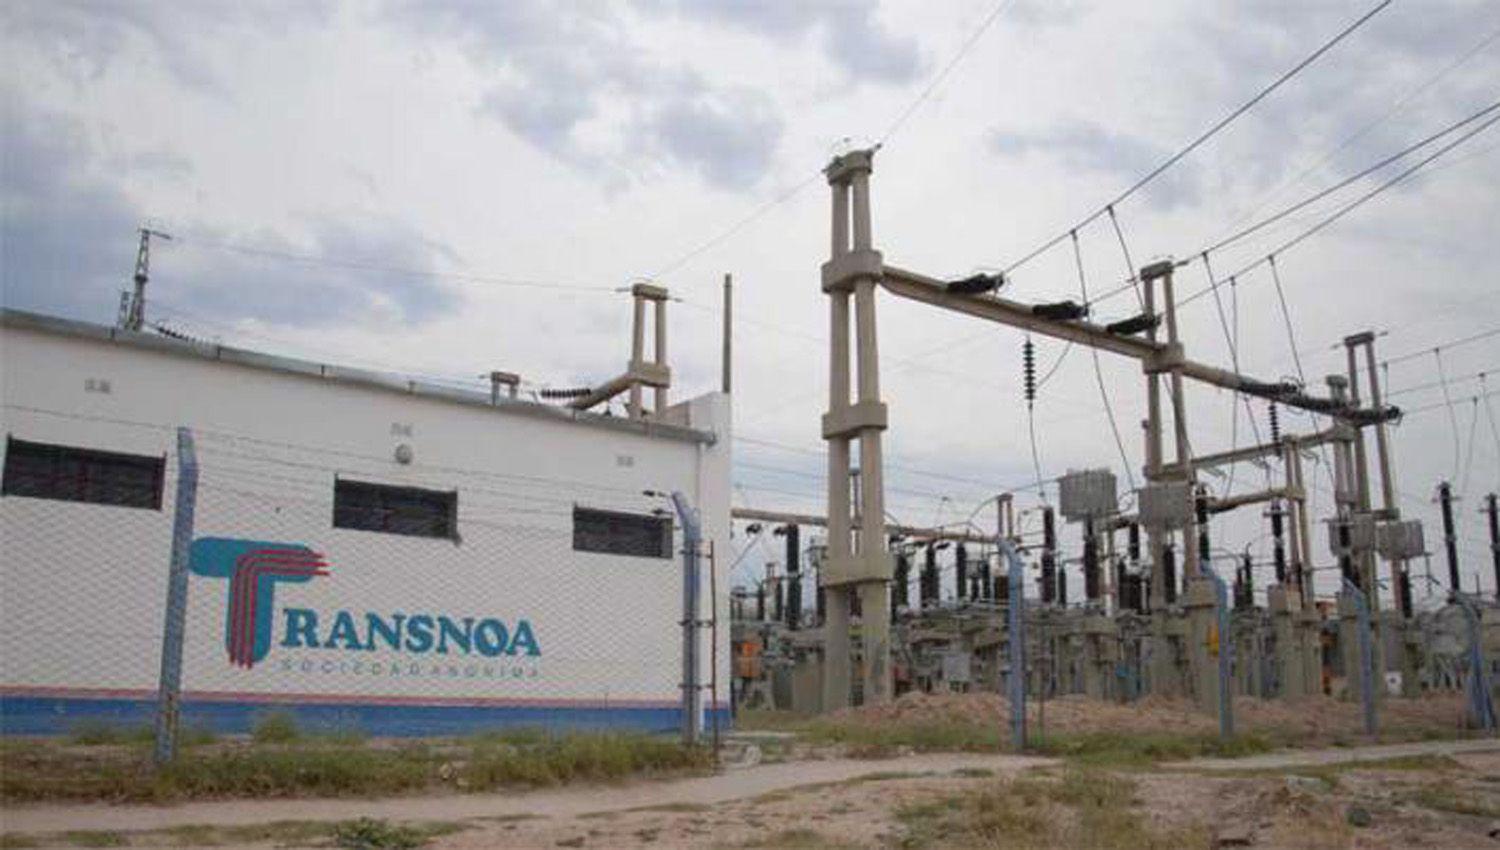 Falla en Transnoa produce corte de electricidad